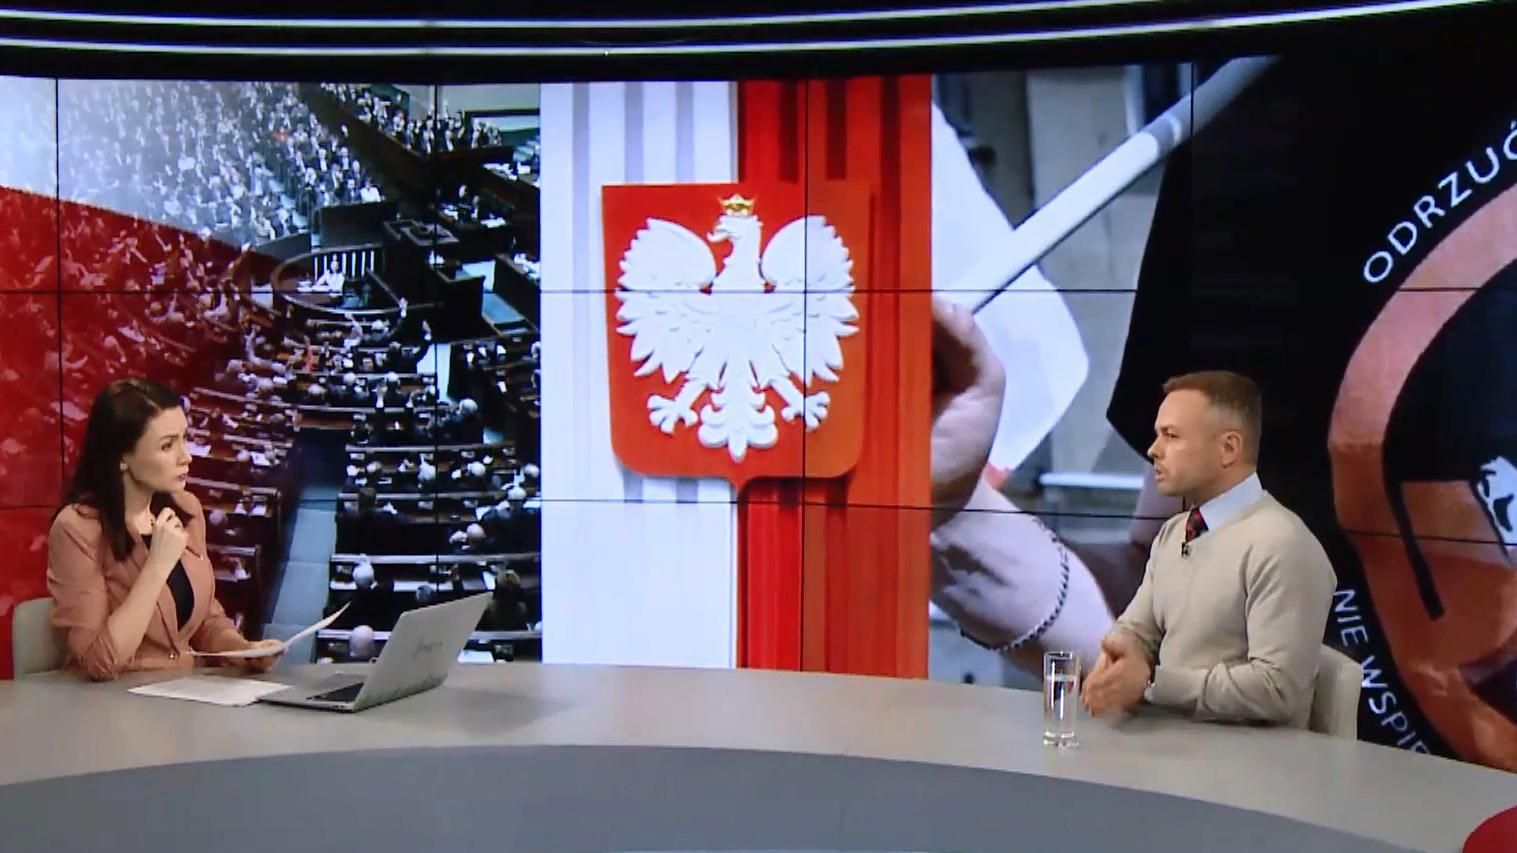 Польша, приняв "антибандеровский" закон, решила копировать действия России, – историк Александр Зинченко